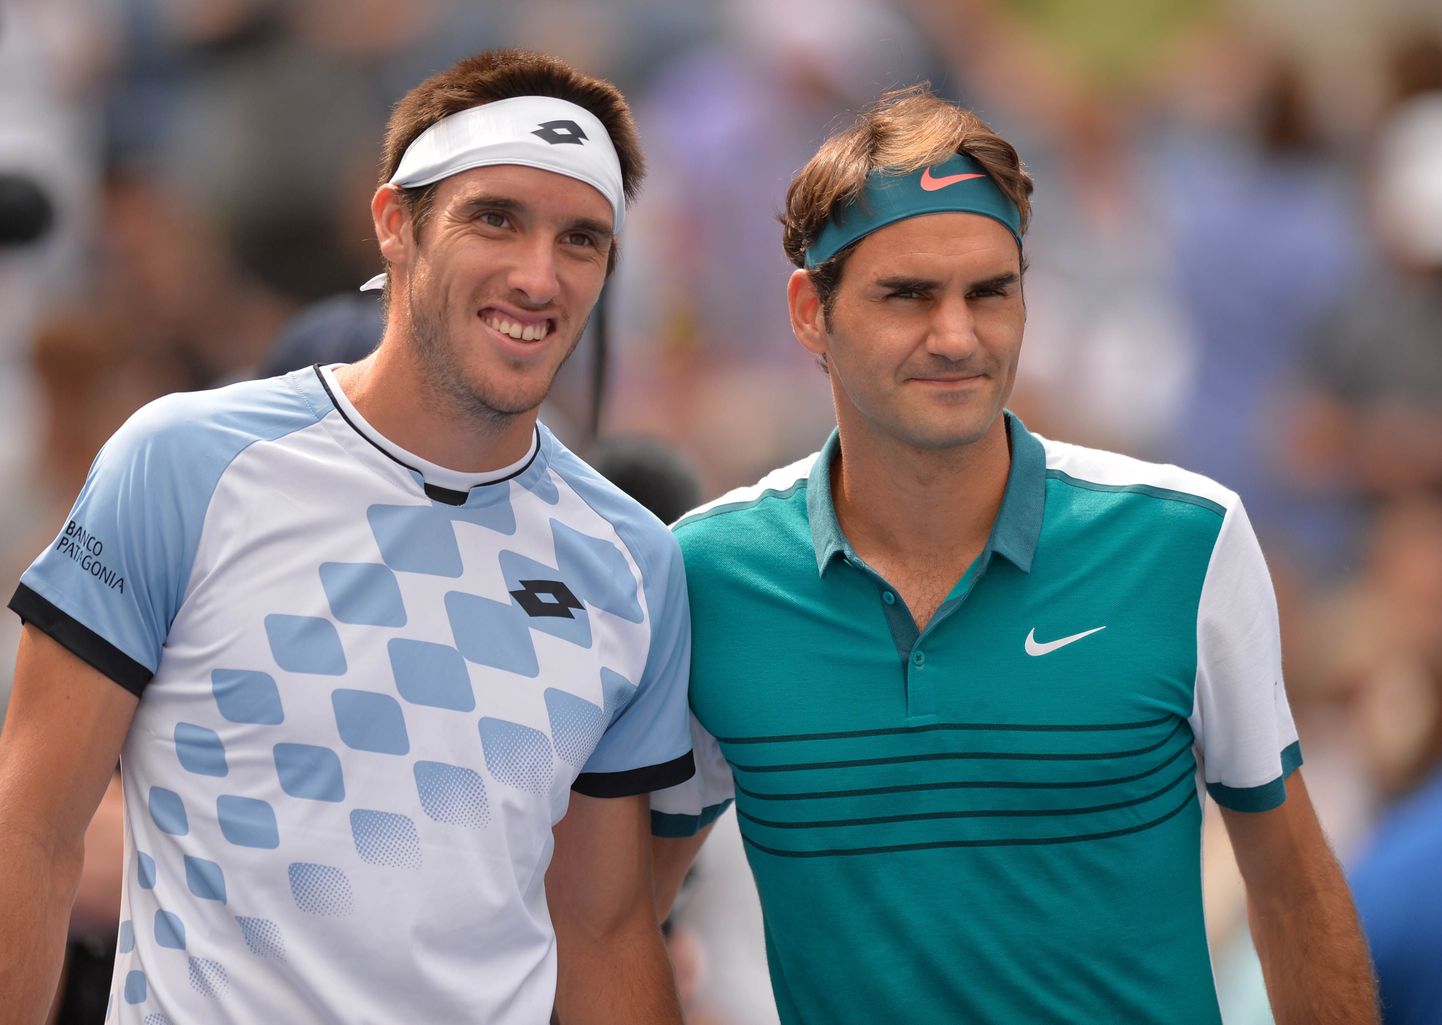 Leonardo Mayer ja Roger Federer.